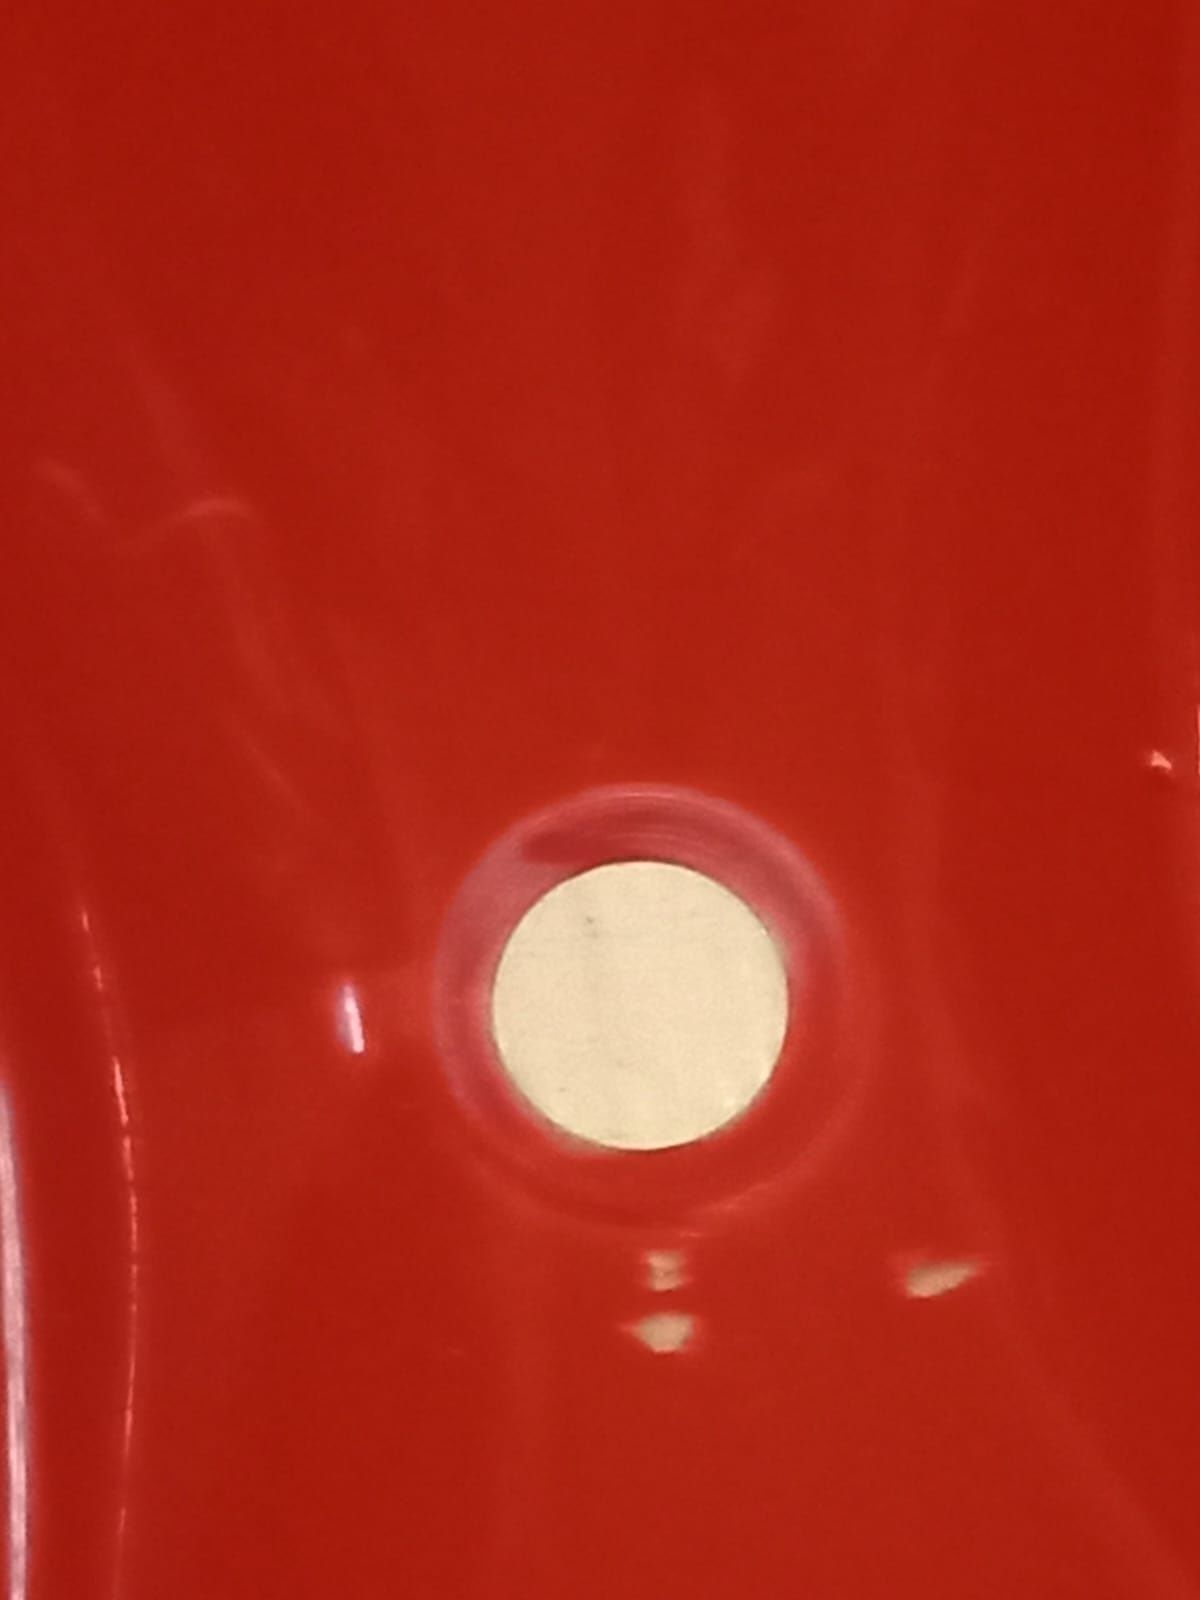 Lavatorio wc vermelho